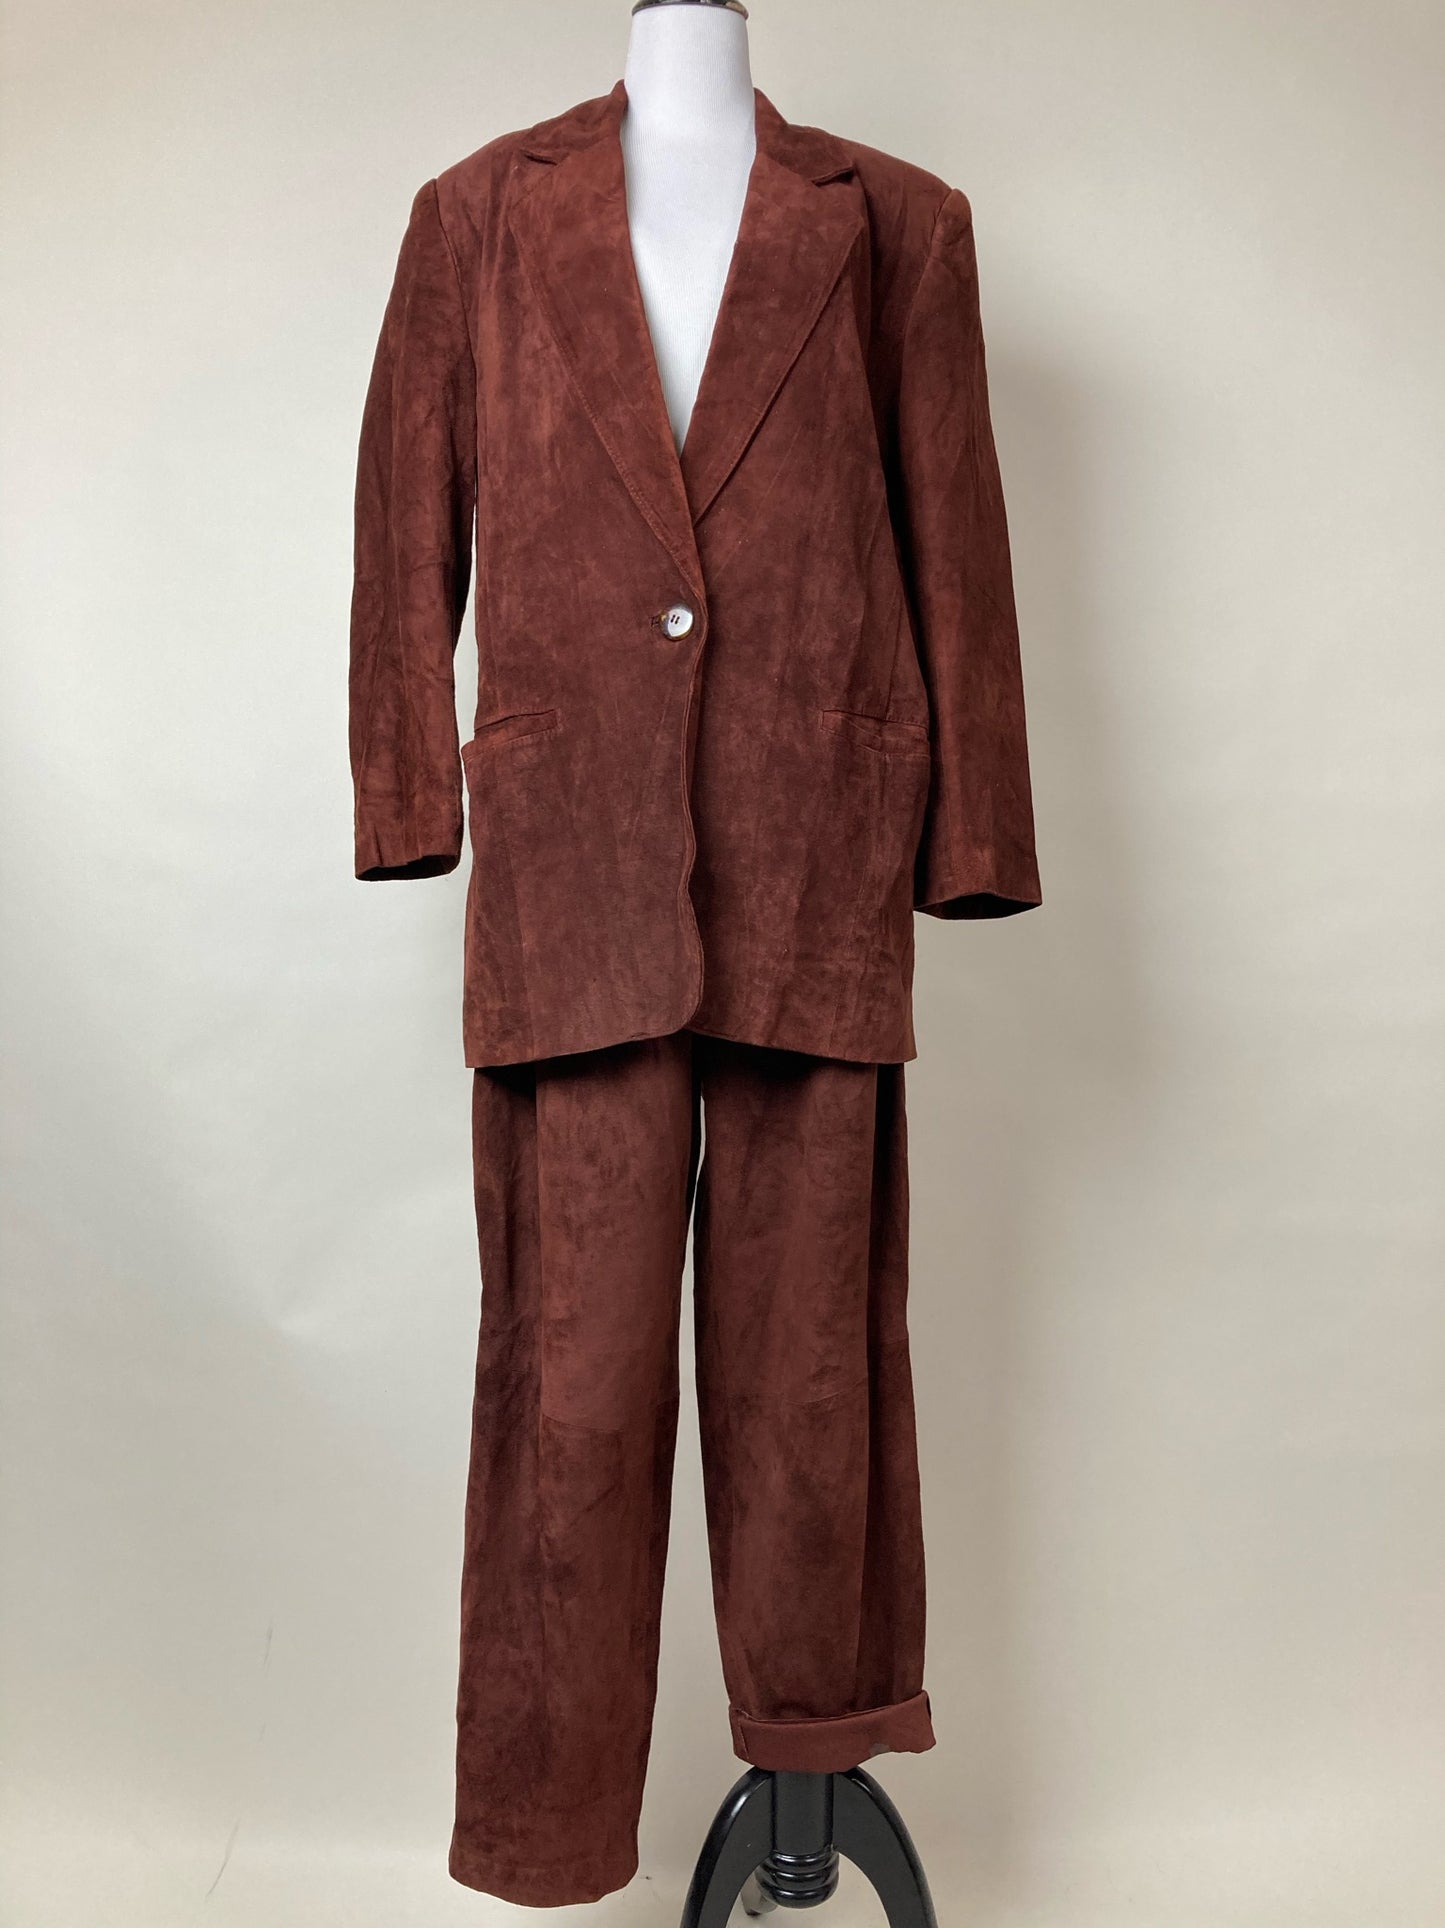 Vintage Redwood Suede Suit by Evan Davies